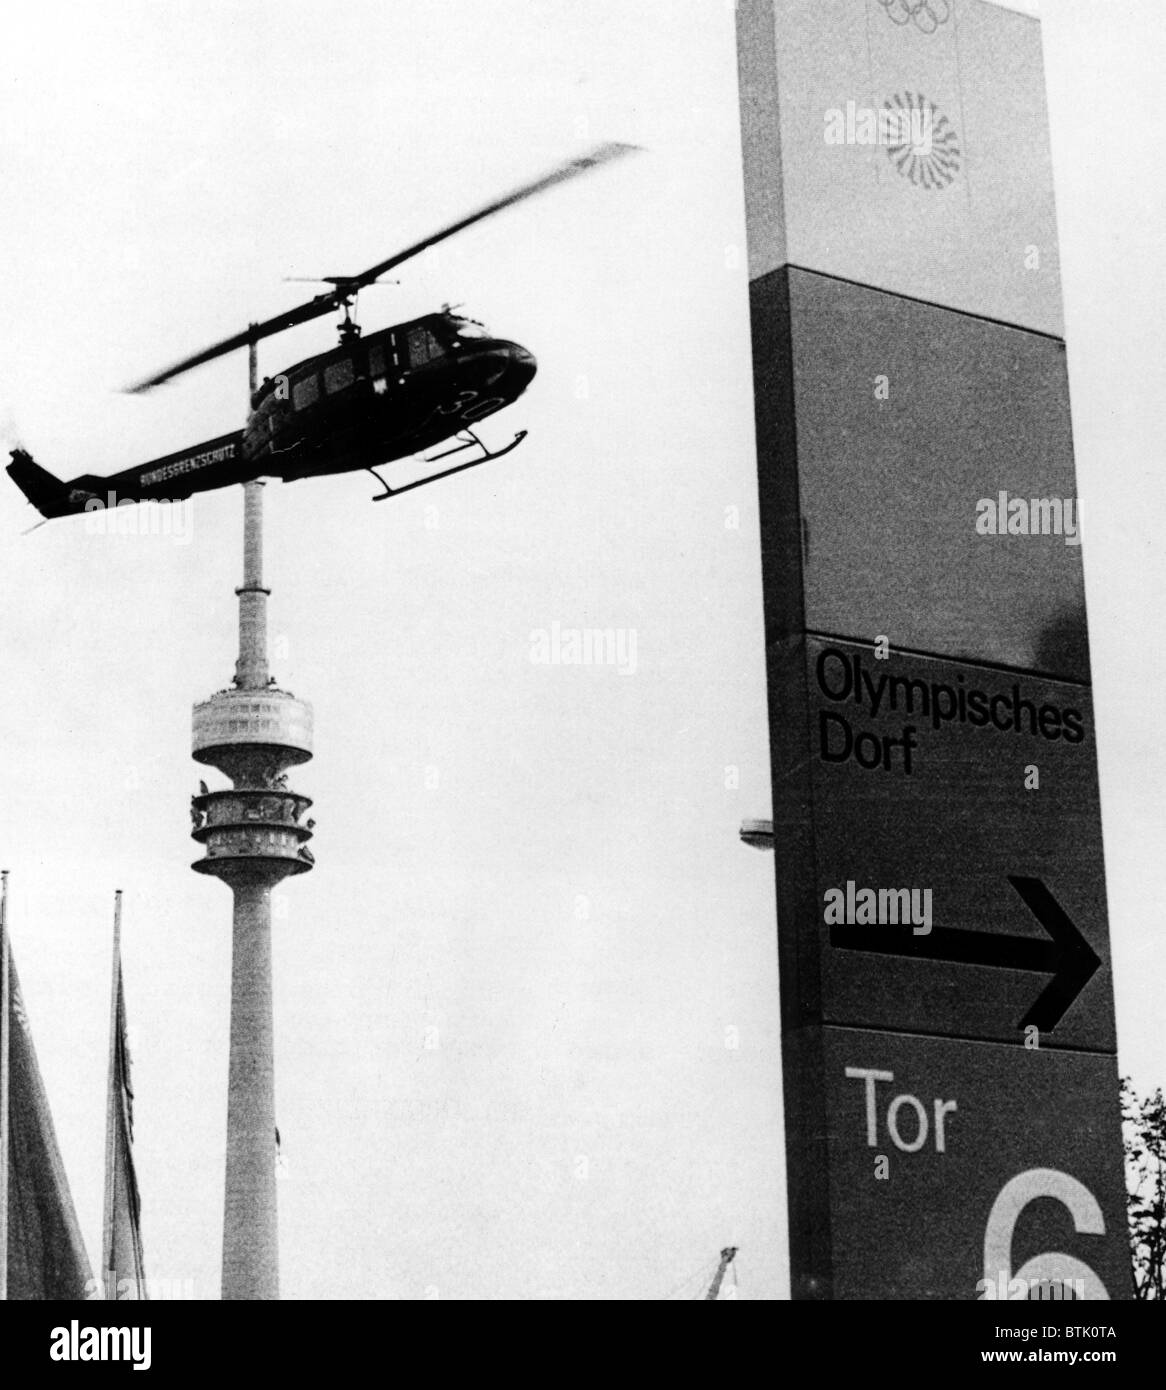 Jeux olympiques 1972, hélicoptère, similaire à celui utilisé pour transporter des terroristes arabes et otages israéliens à l'aéroport, Munich, Allemagne, 09-05- Banque D'Images